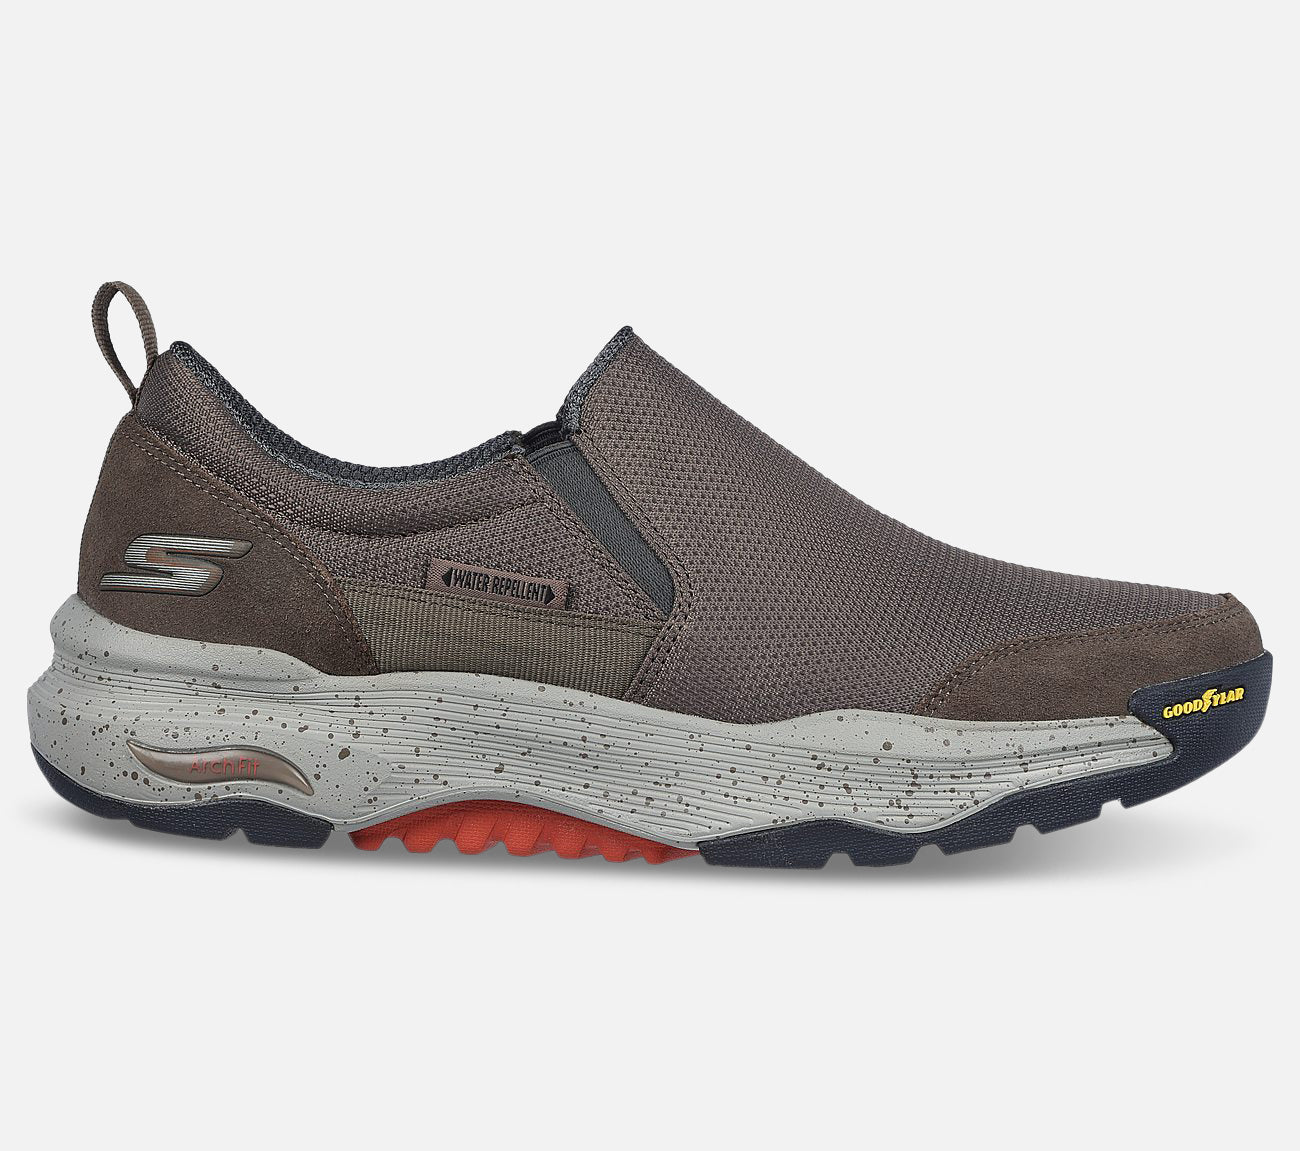 GO WALK Arch Fit Outdoor: Castle Rock - Water Repellent Shoe Skechers